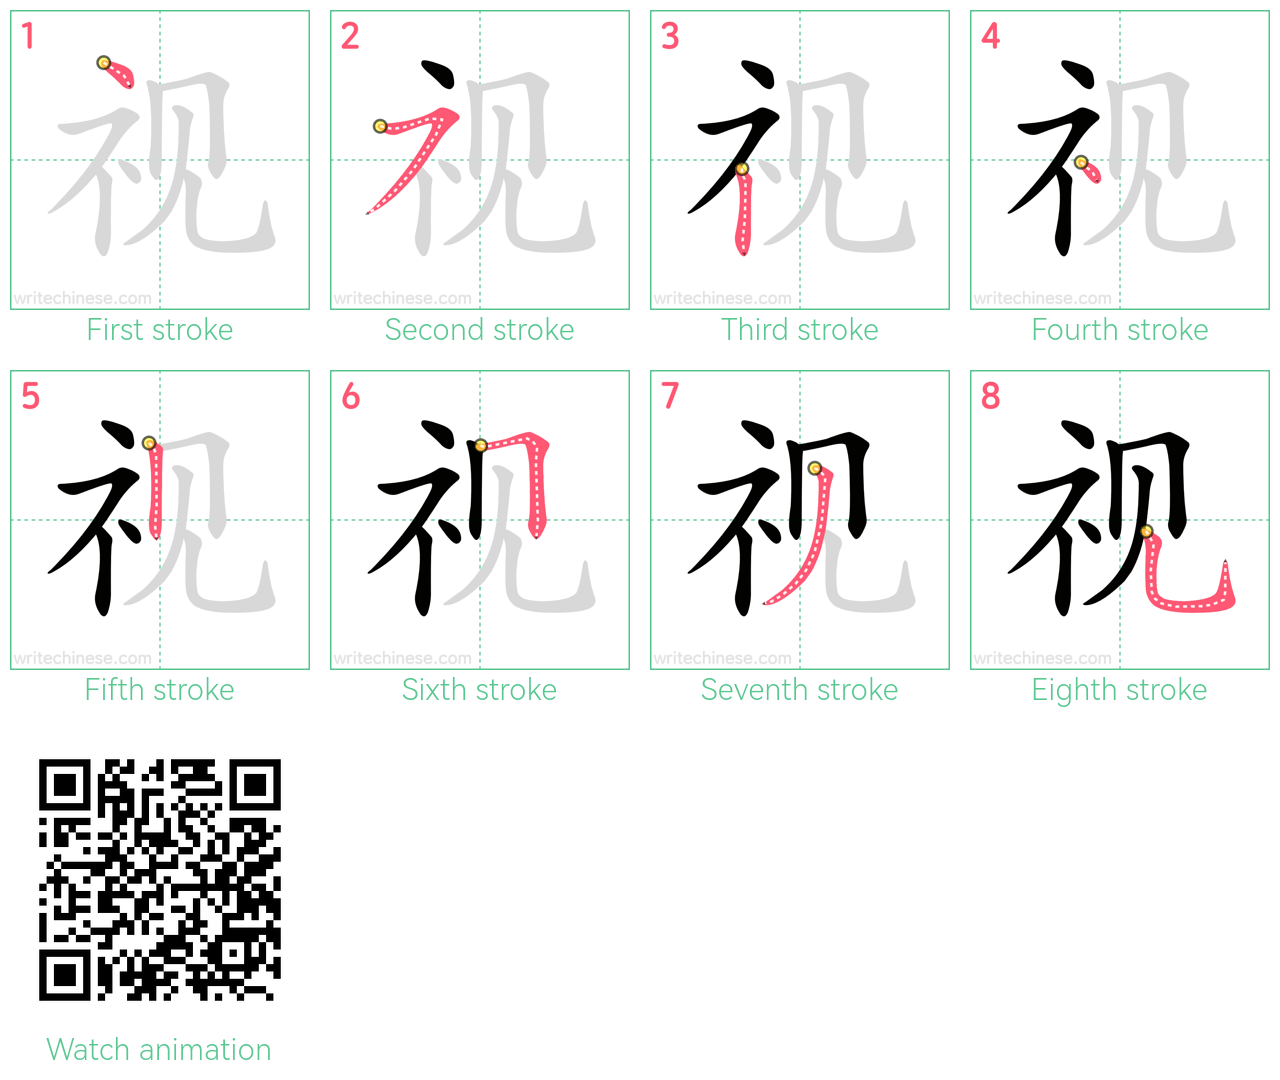 视 step-by-step stroke order diagrams